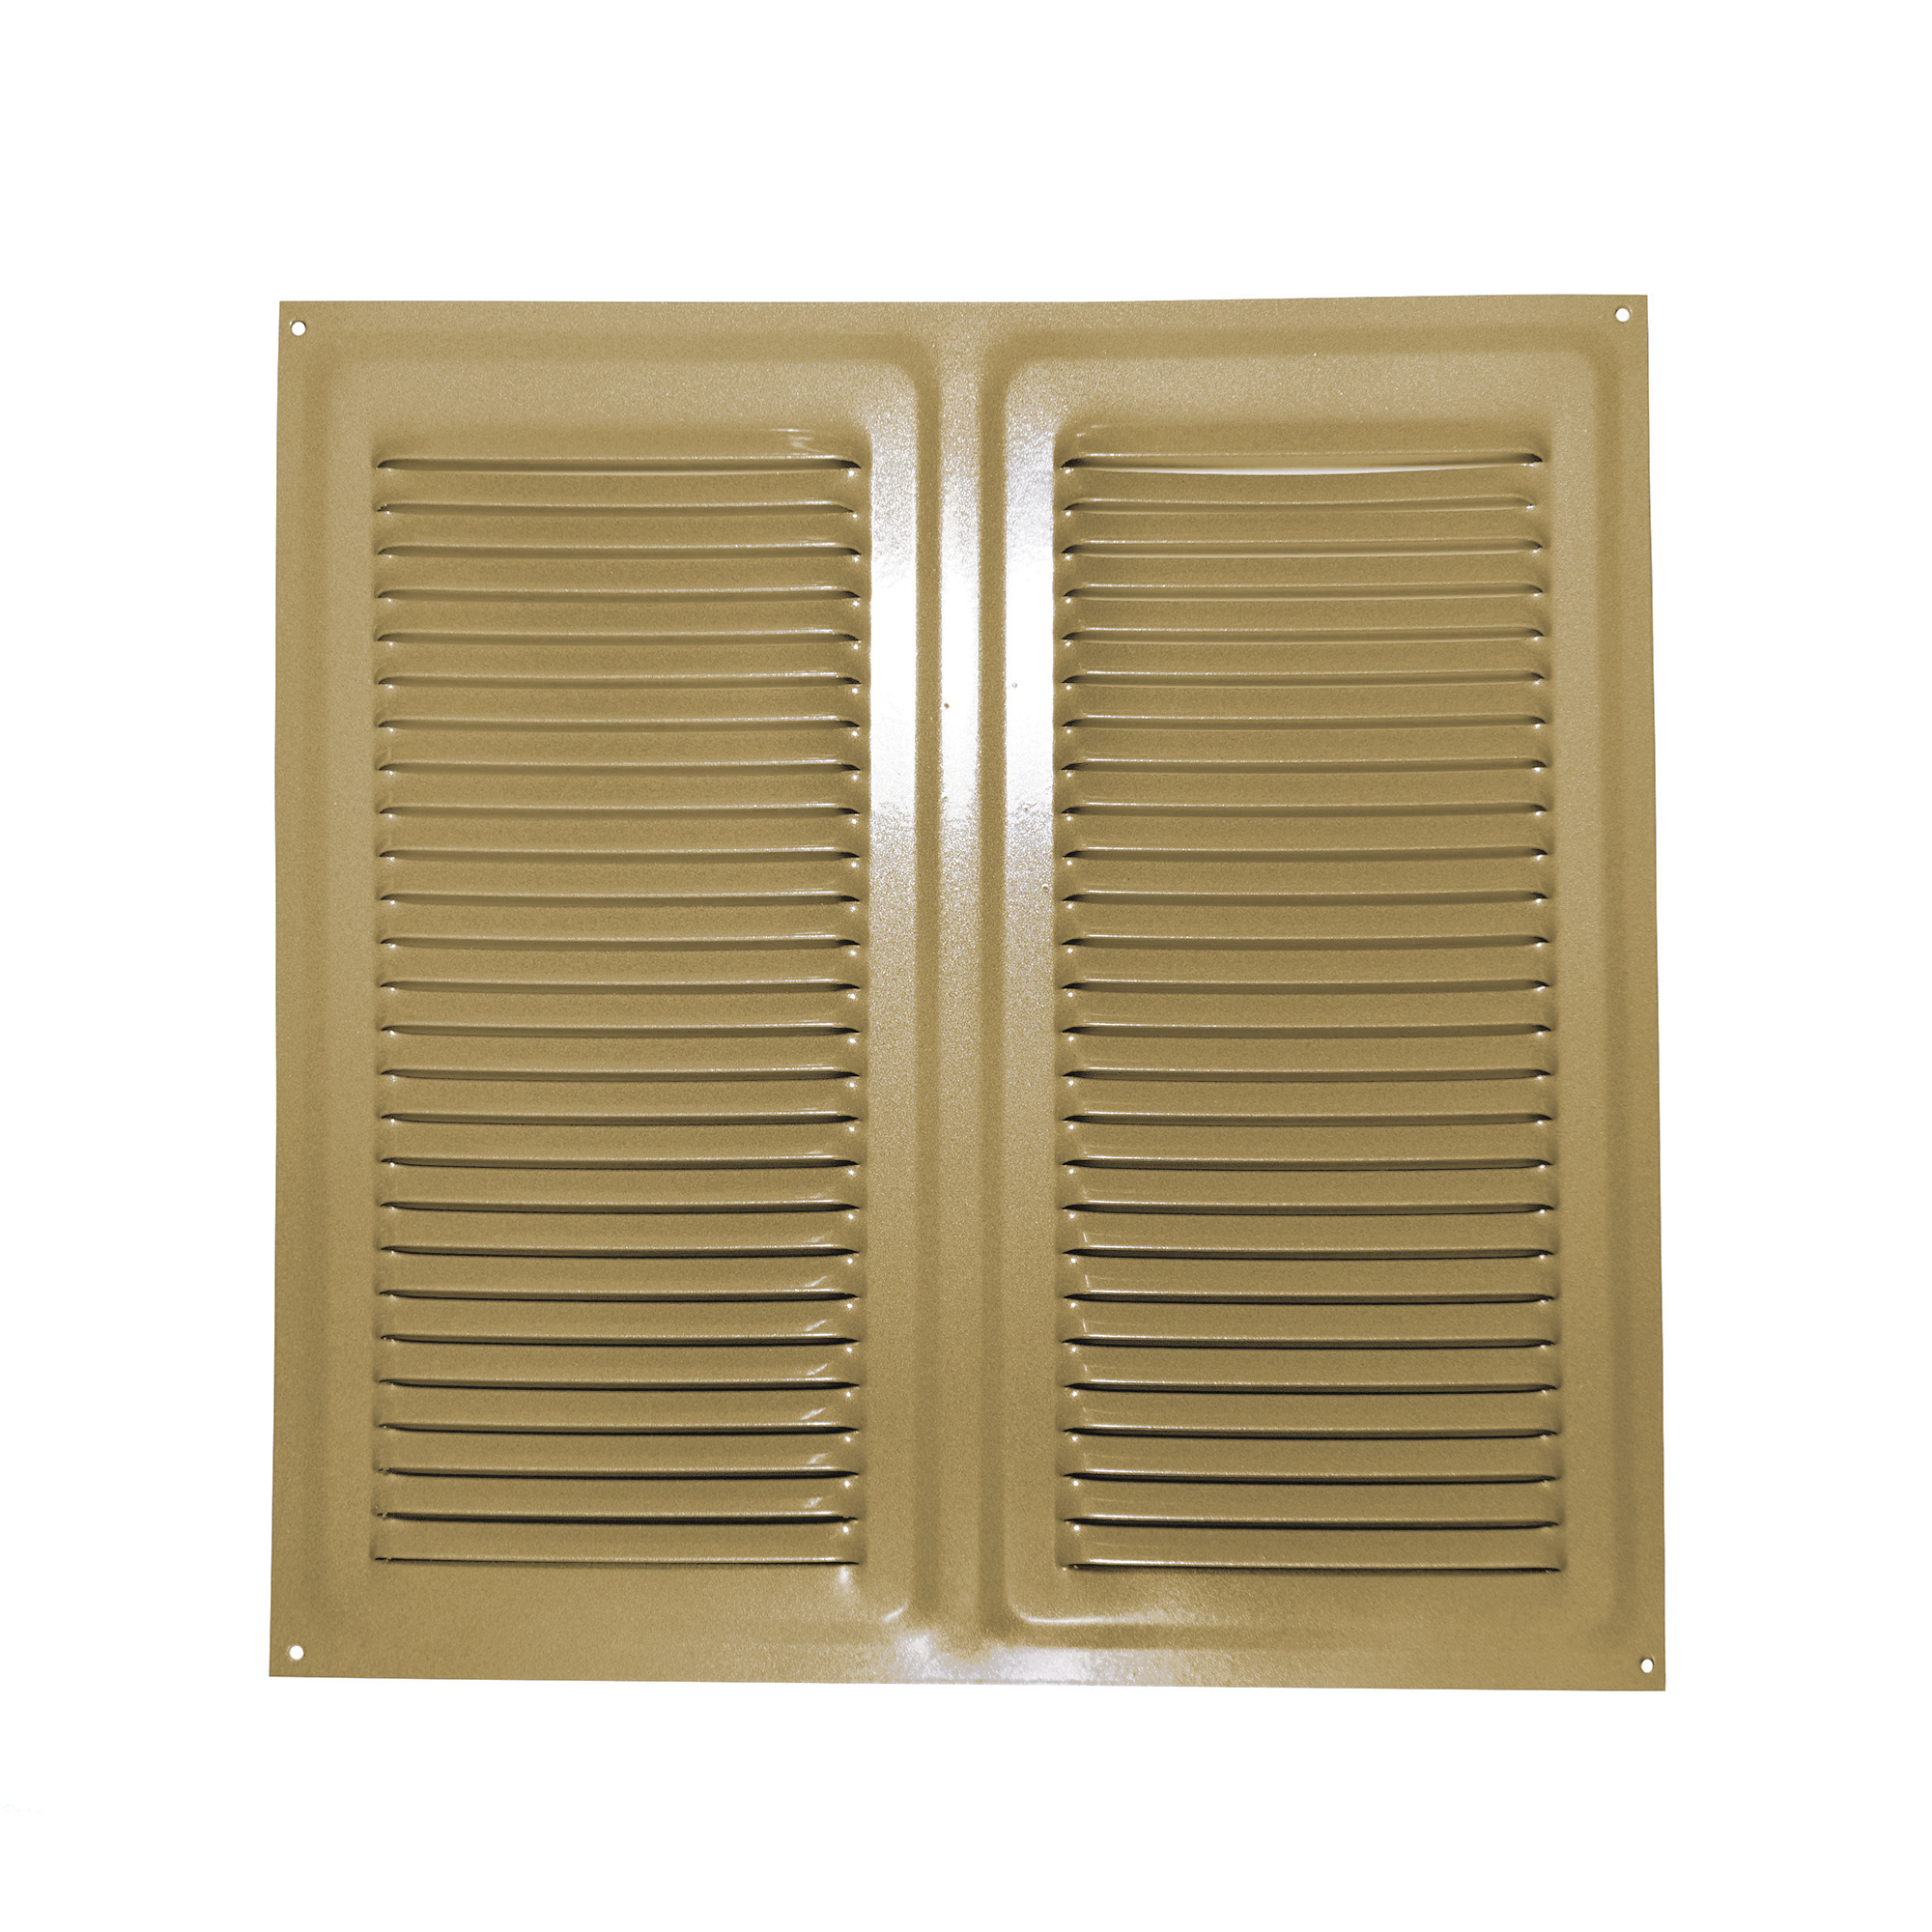 Решетка вентиляционная Трибатрон Золотой металлик 300x300 мм решетка вентиляционная эра 2525мэ 250x250 мм